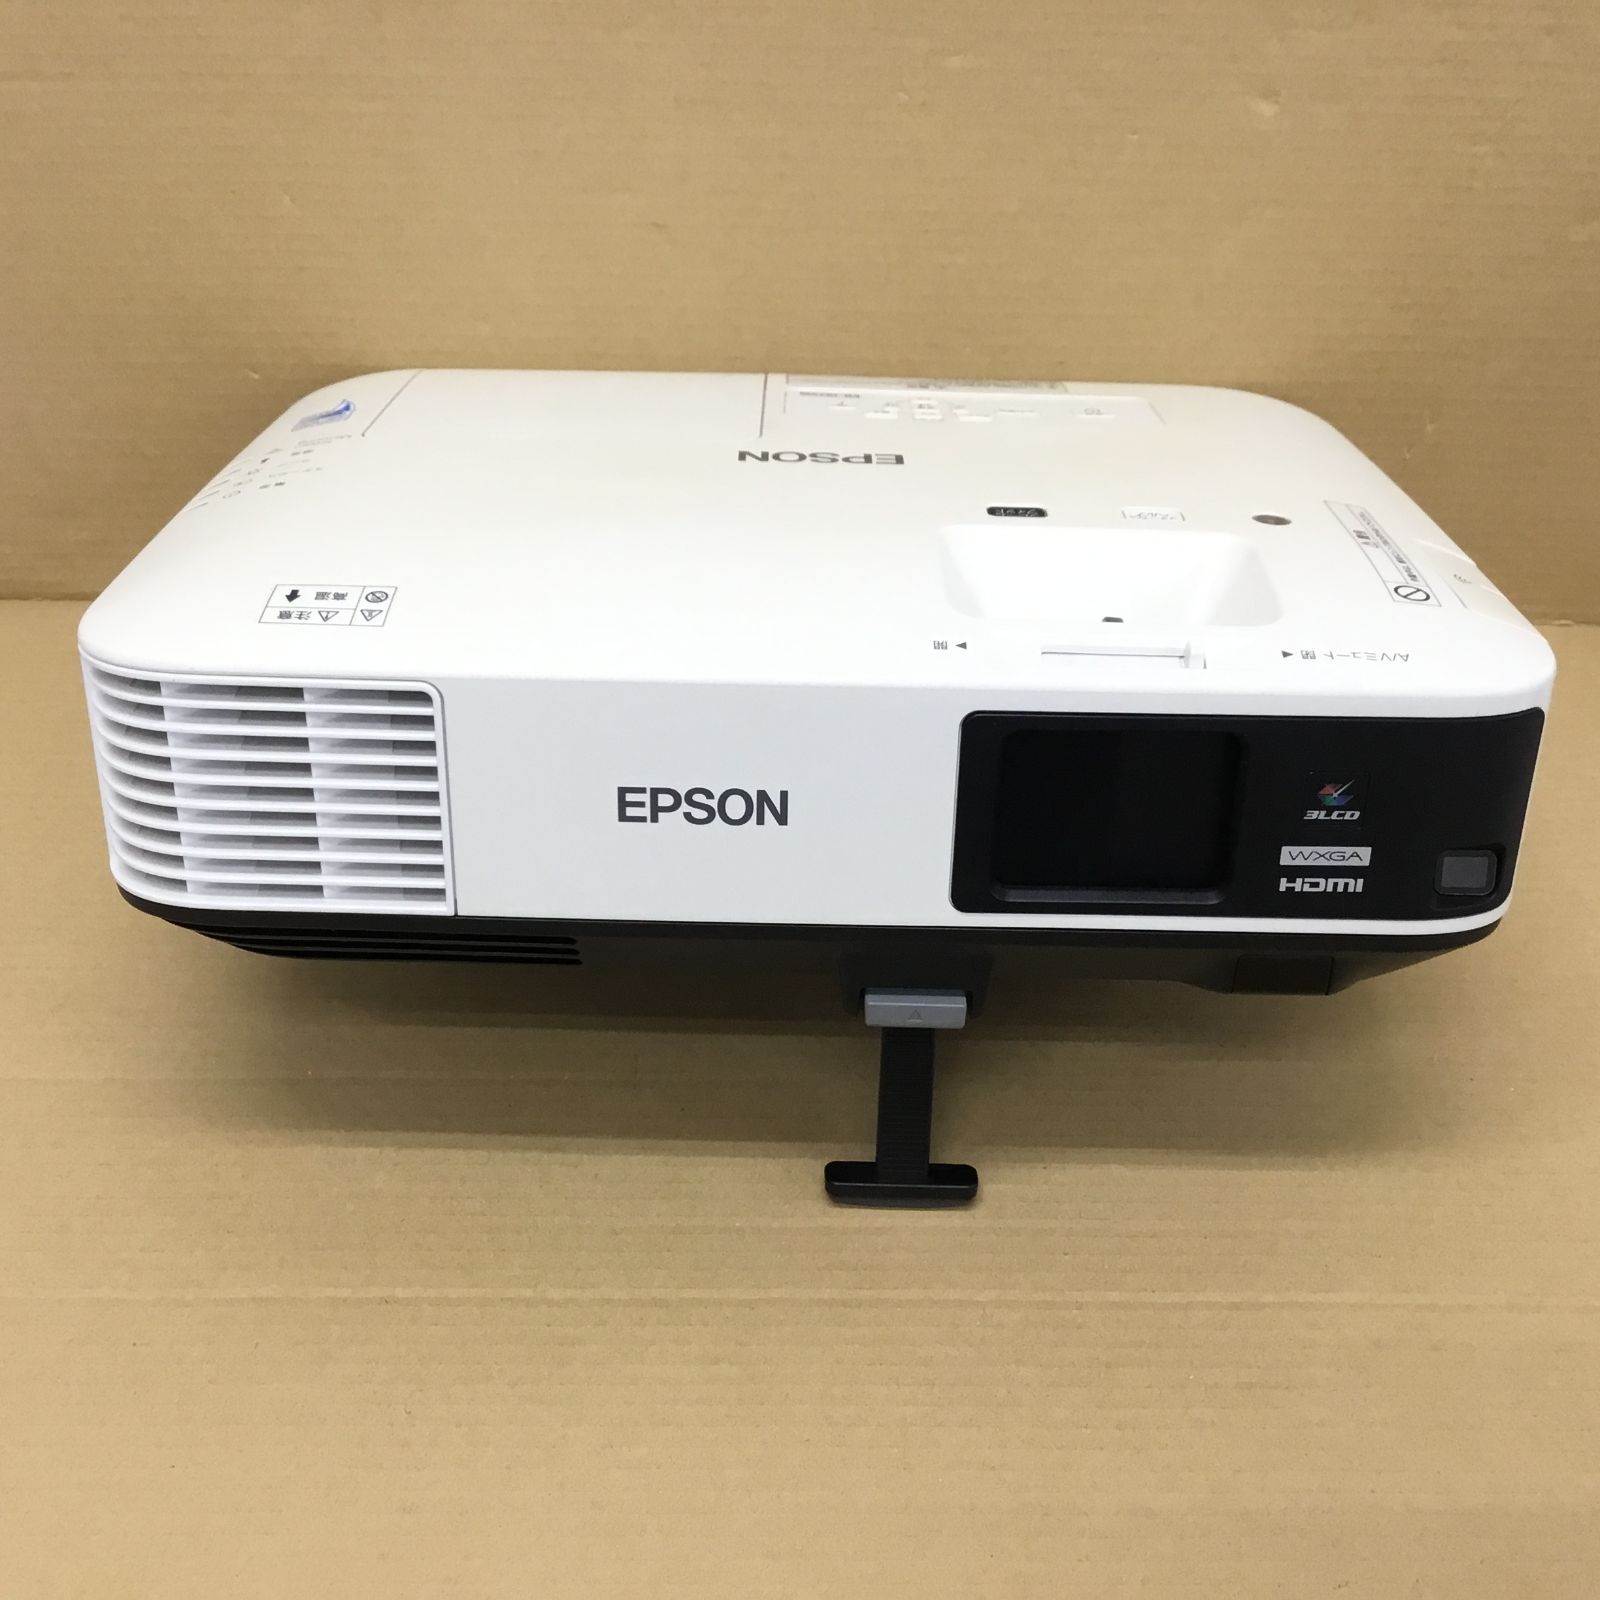 EPSON　プロジェクター　EB-1975W　超美品　ランプ時間41H